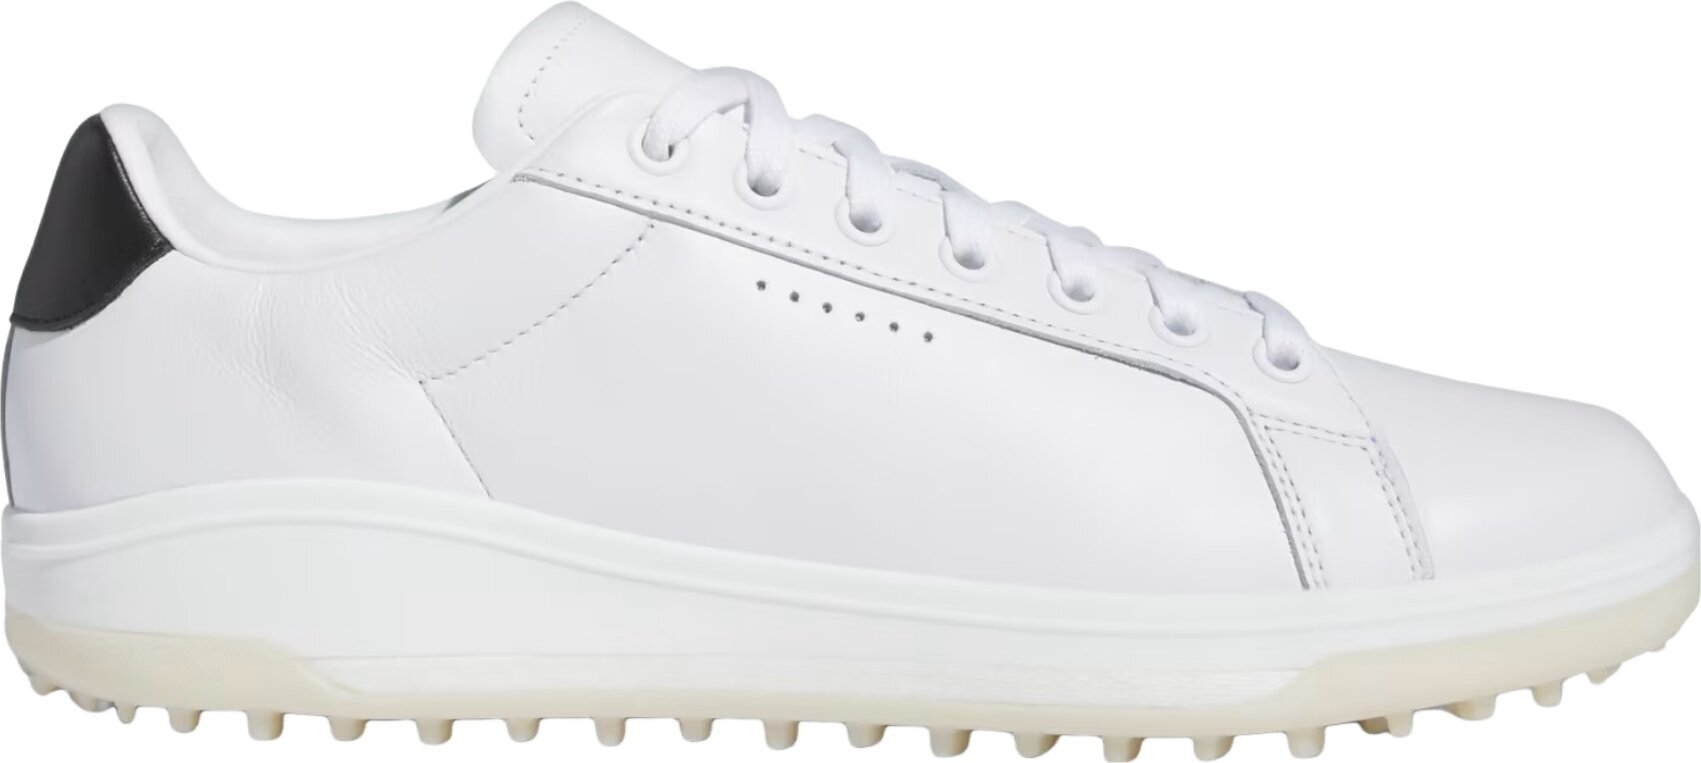 Calzado de golf para hombres Adidas Go-To Spikeless 2.0 Mens Golf Shoes White/Core Black/Aluminium 47 1/3